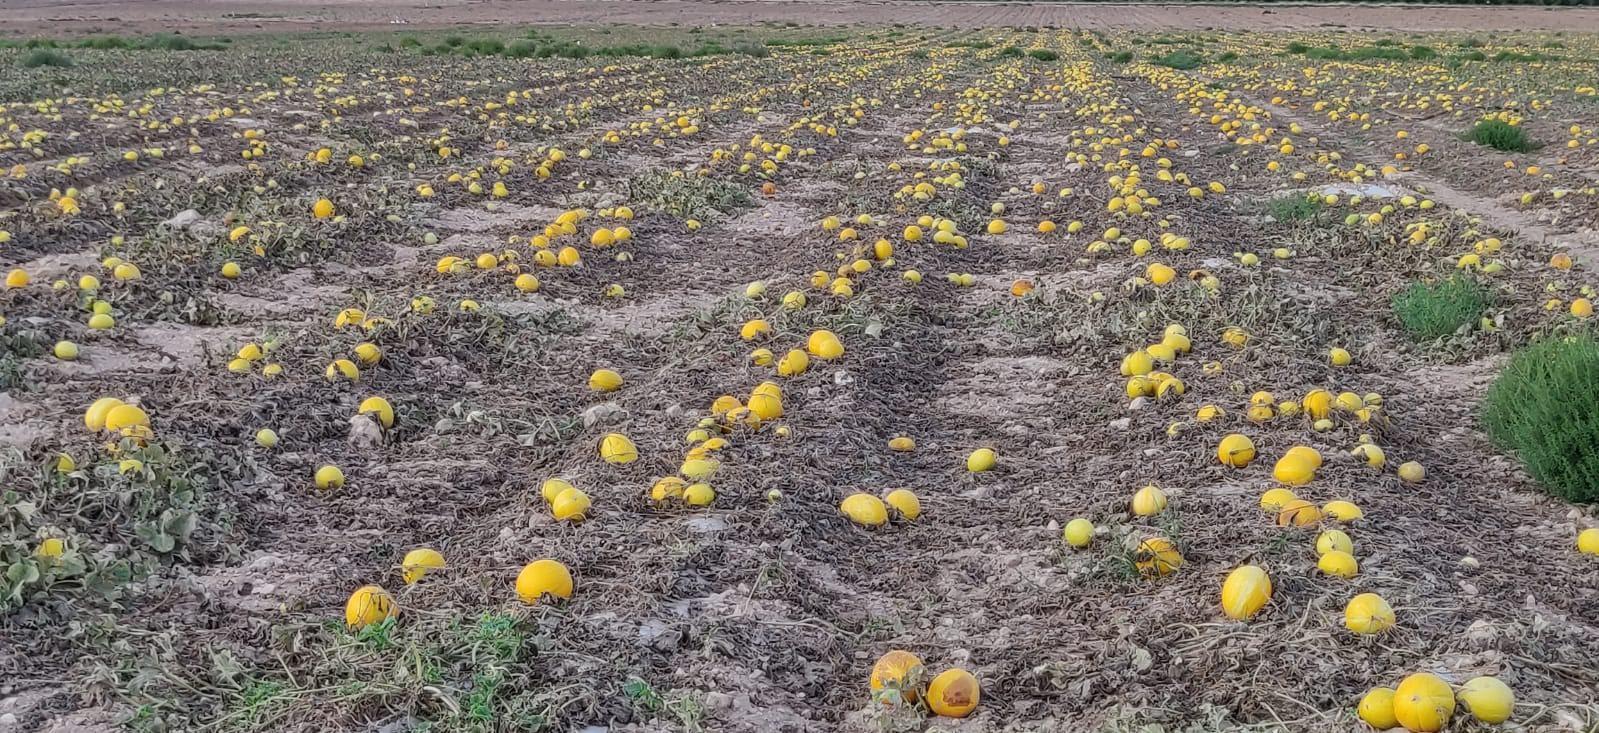 Melones abandonados en Yecla, septiembre 2019. Imagen: Plataforma Ciudadana Salvemos el Arabí y Comarca